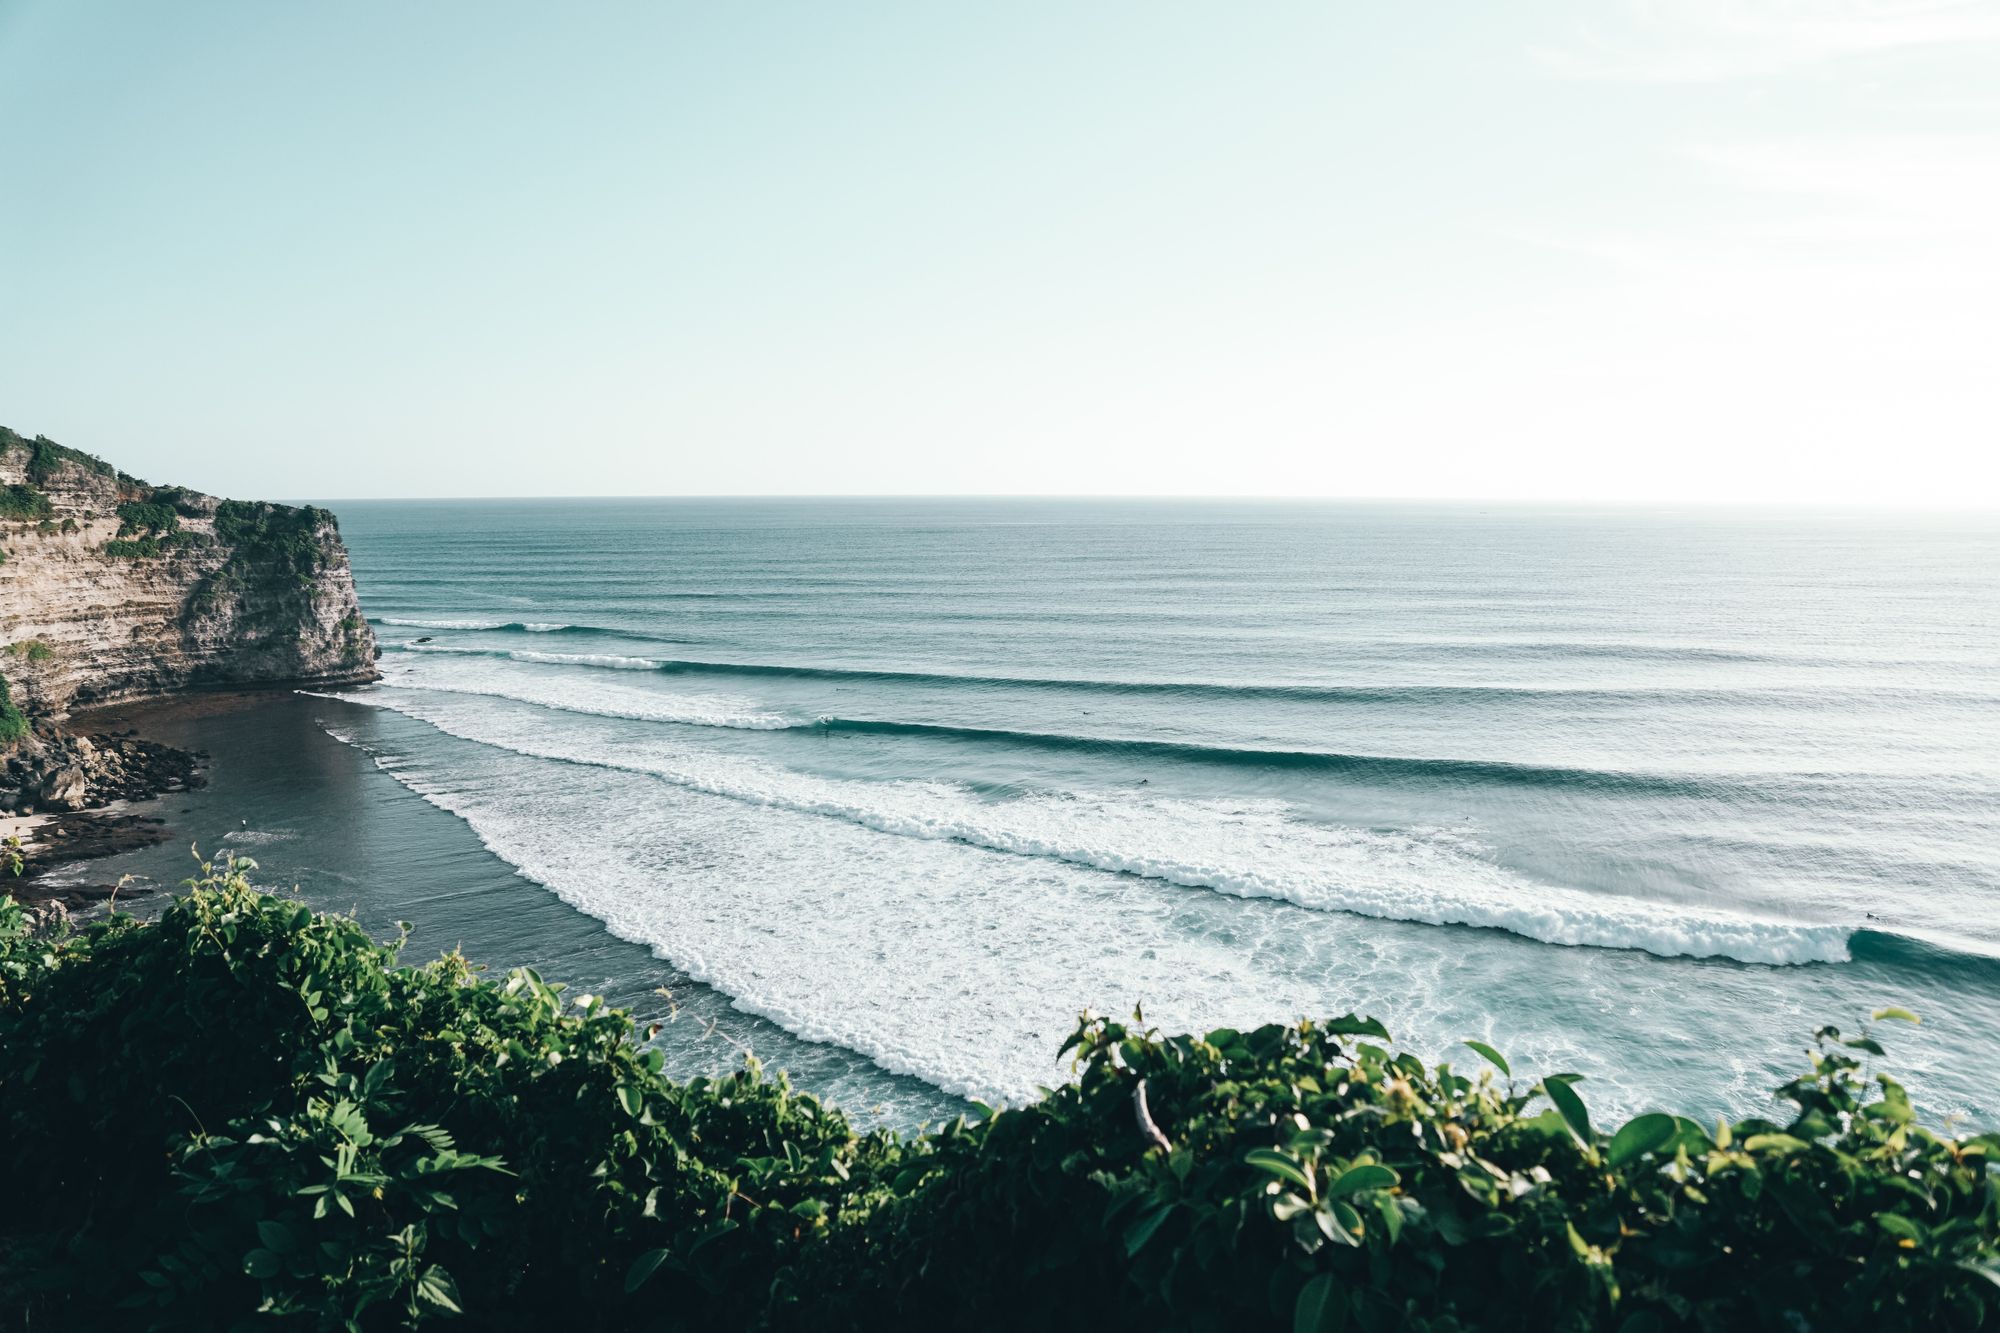 uluwatu in Indonesia, a cheap surf destination